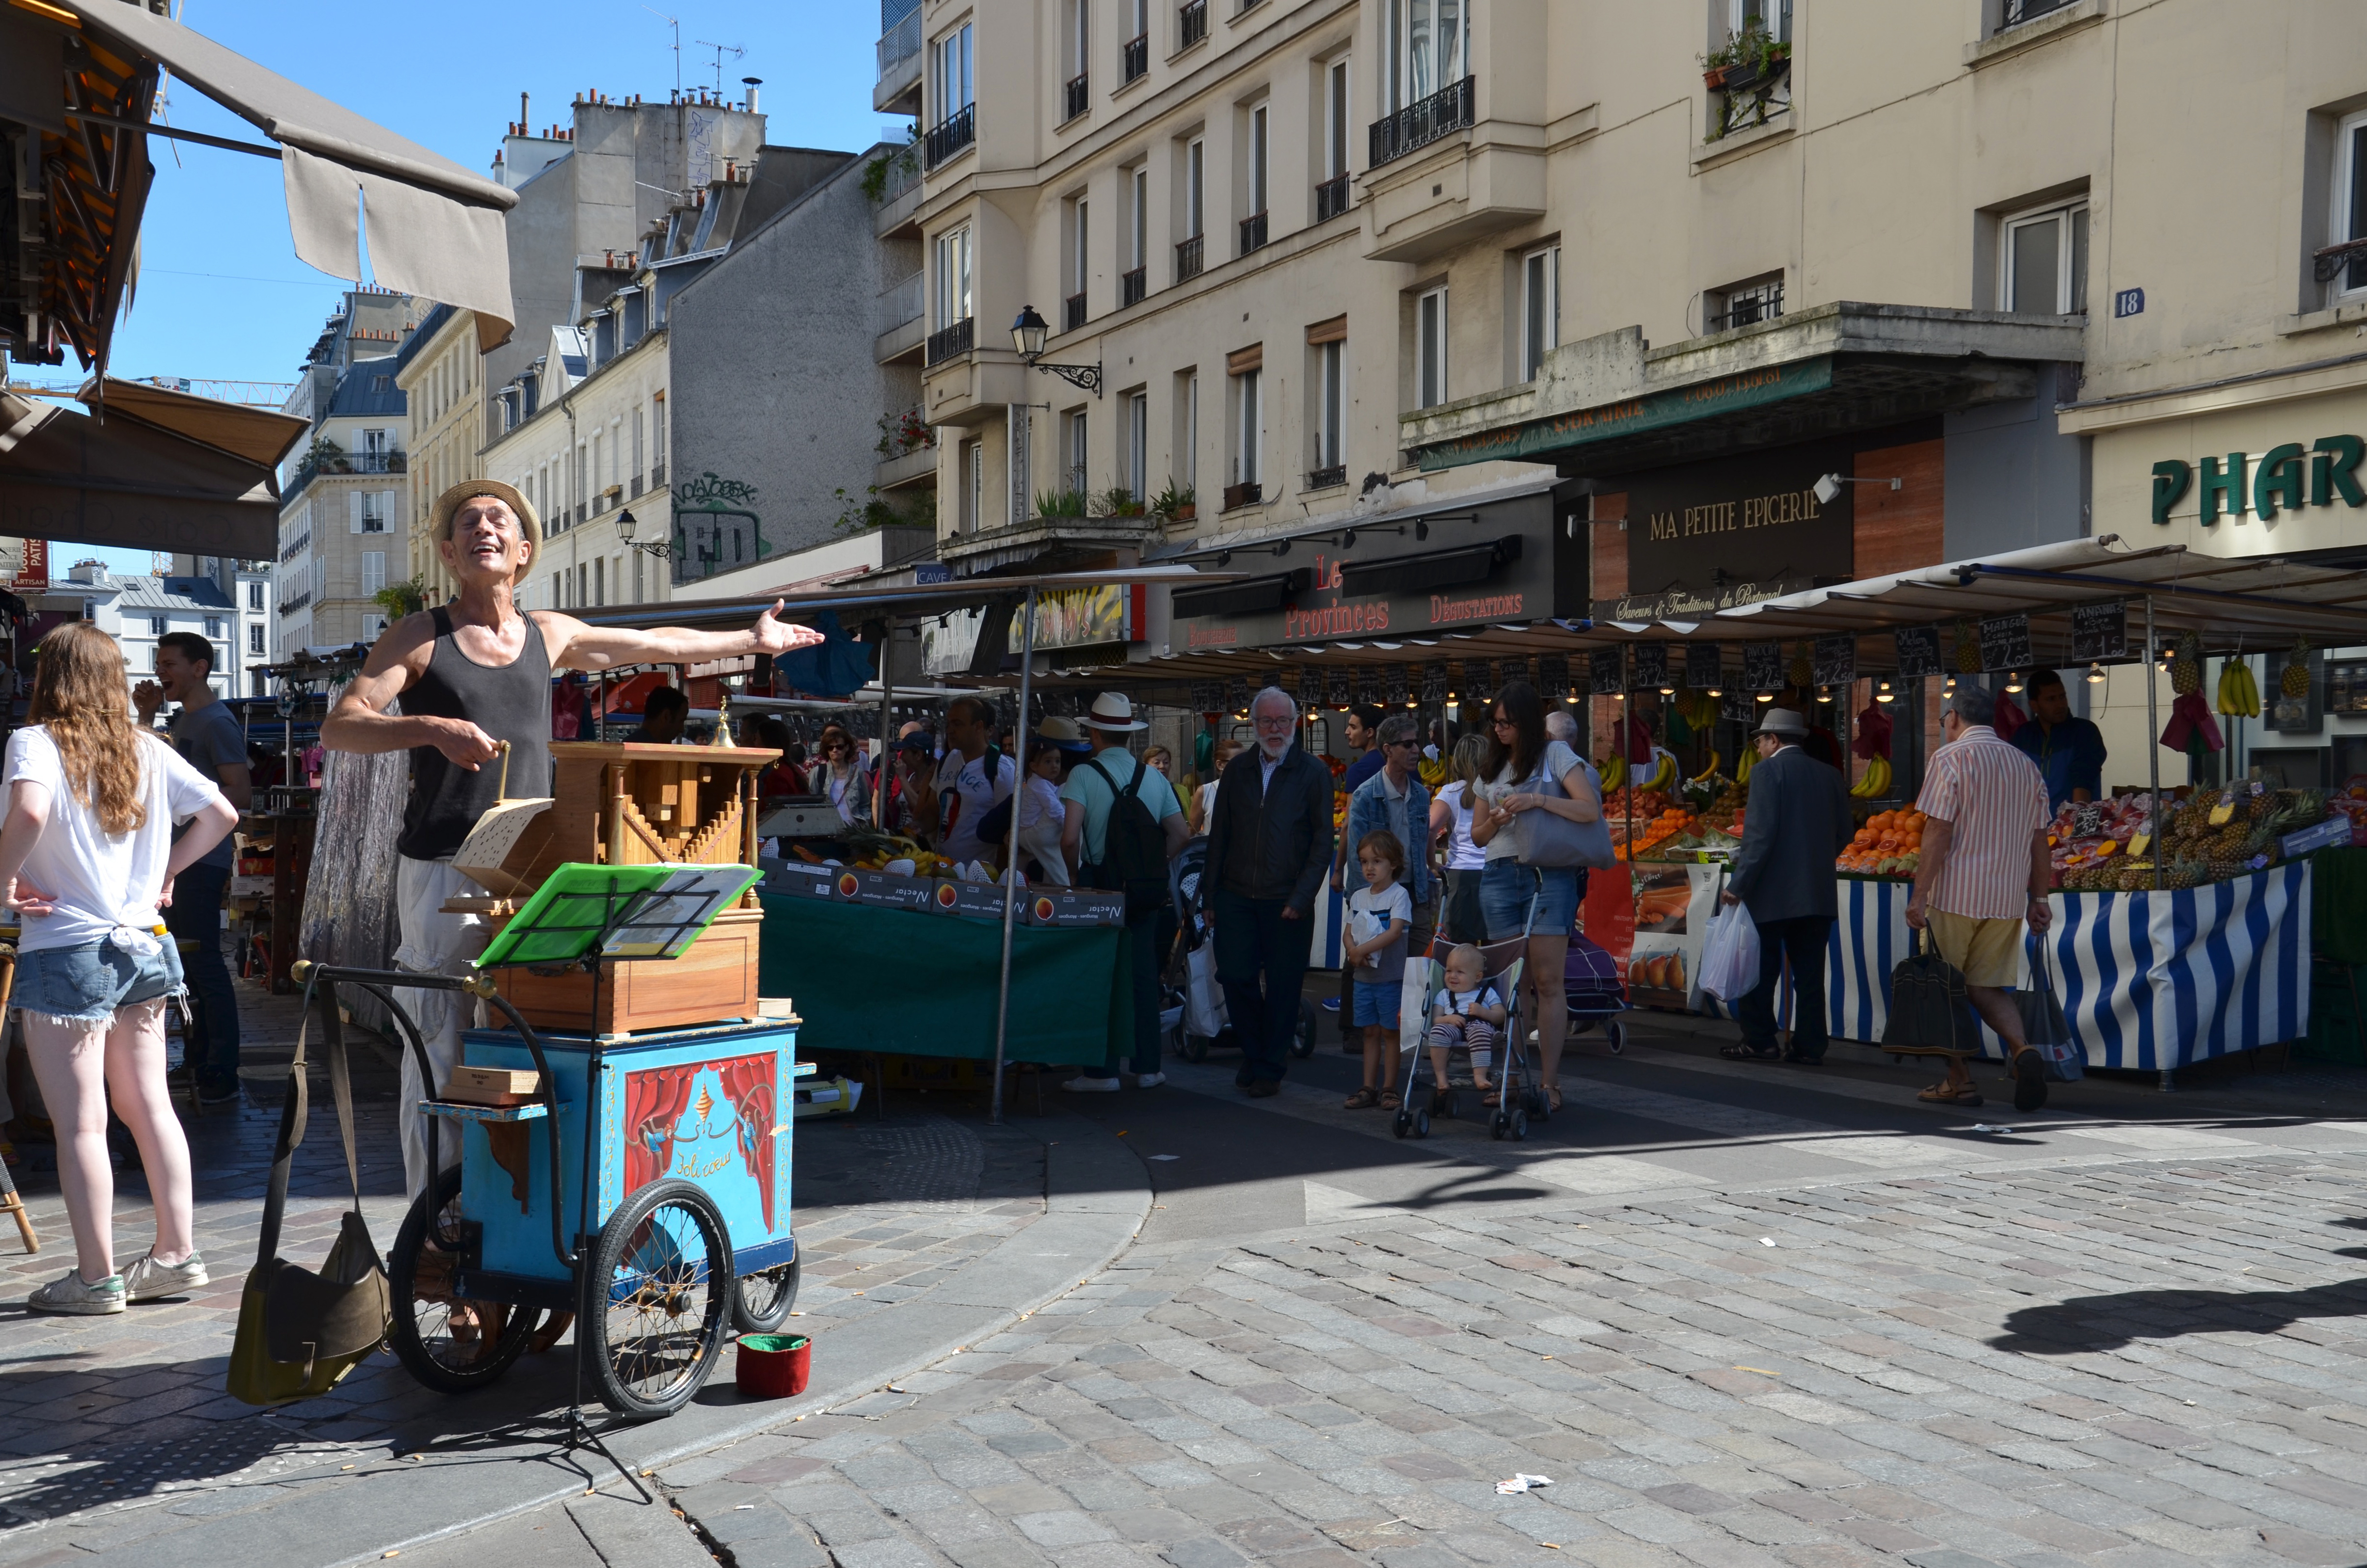 Organist entertaining at Marche Aligre, Paris